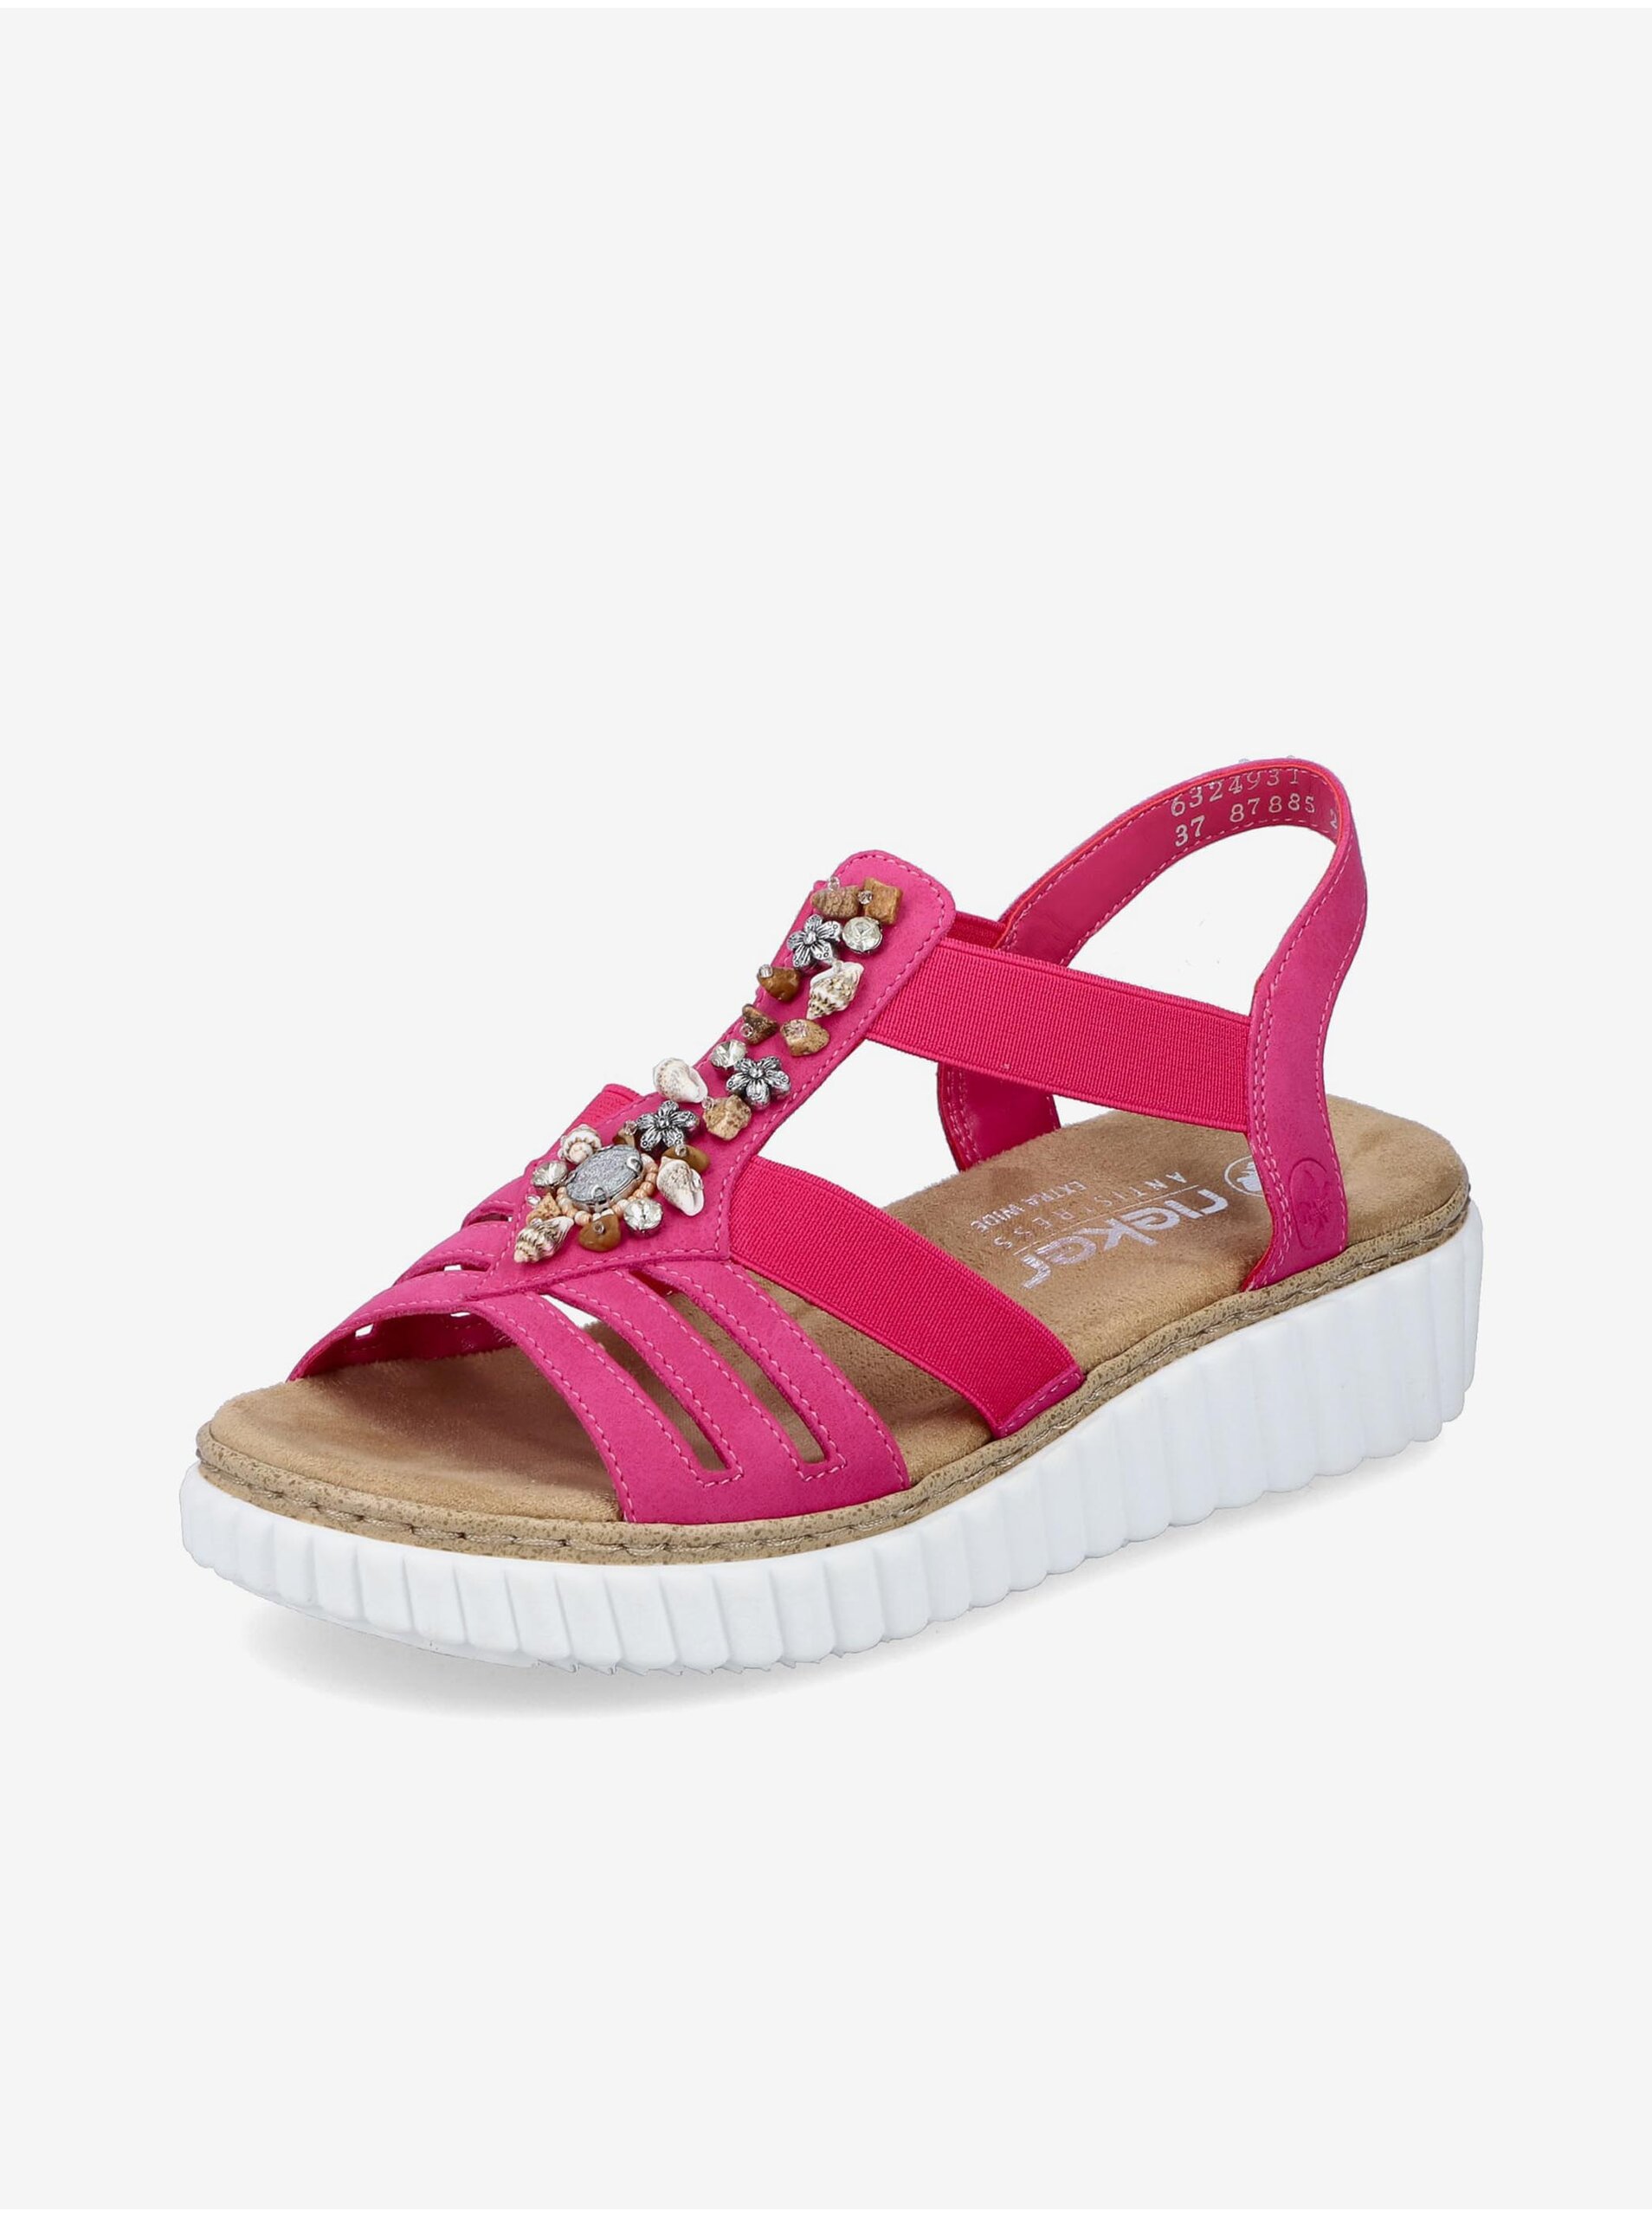 E-shop Tmavě růžové dámské sandálky Rieker